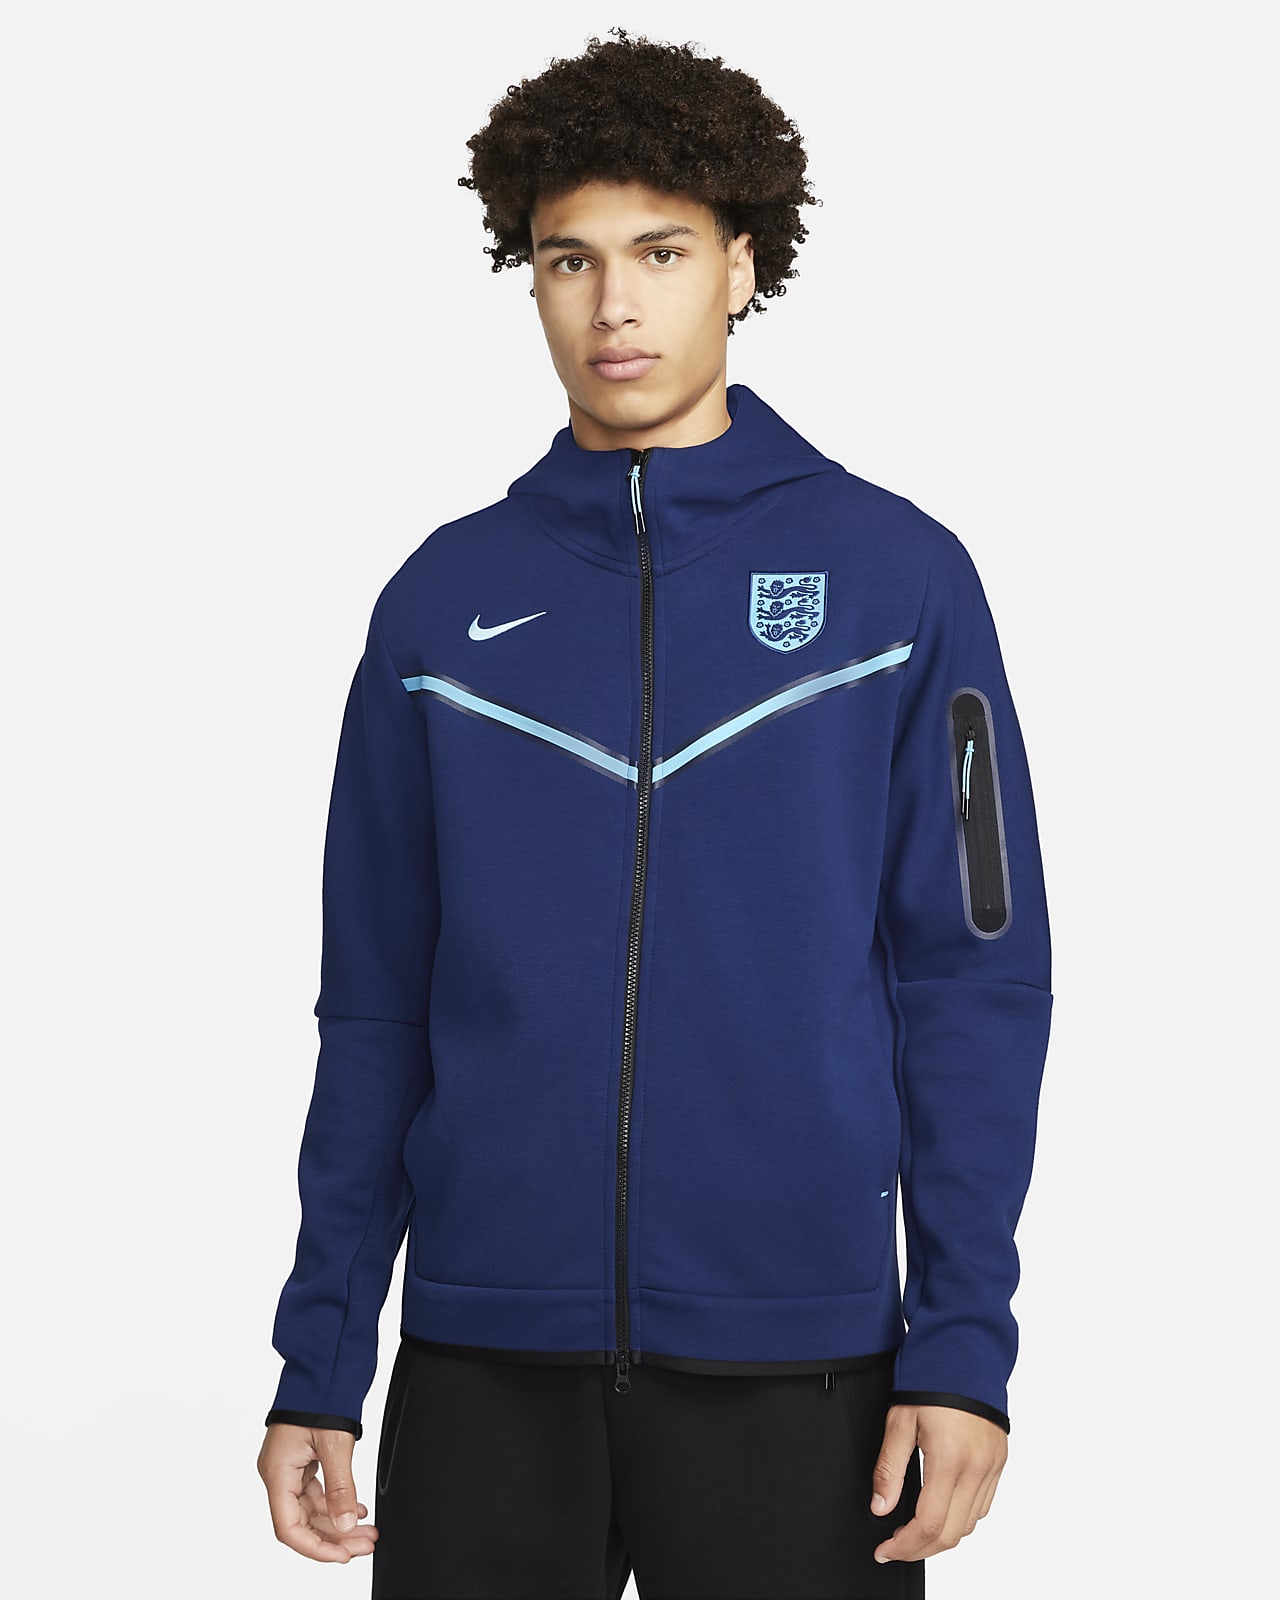 Ανδρική μπλούζα Nike με κουκούλα και φερμουάρ σε όλο το μήκος από Tech Fleece Αγγλία